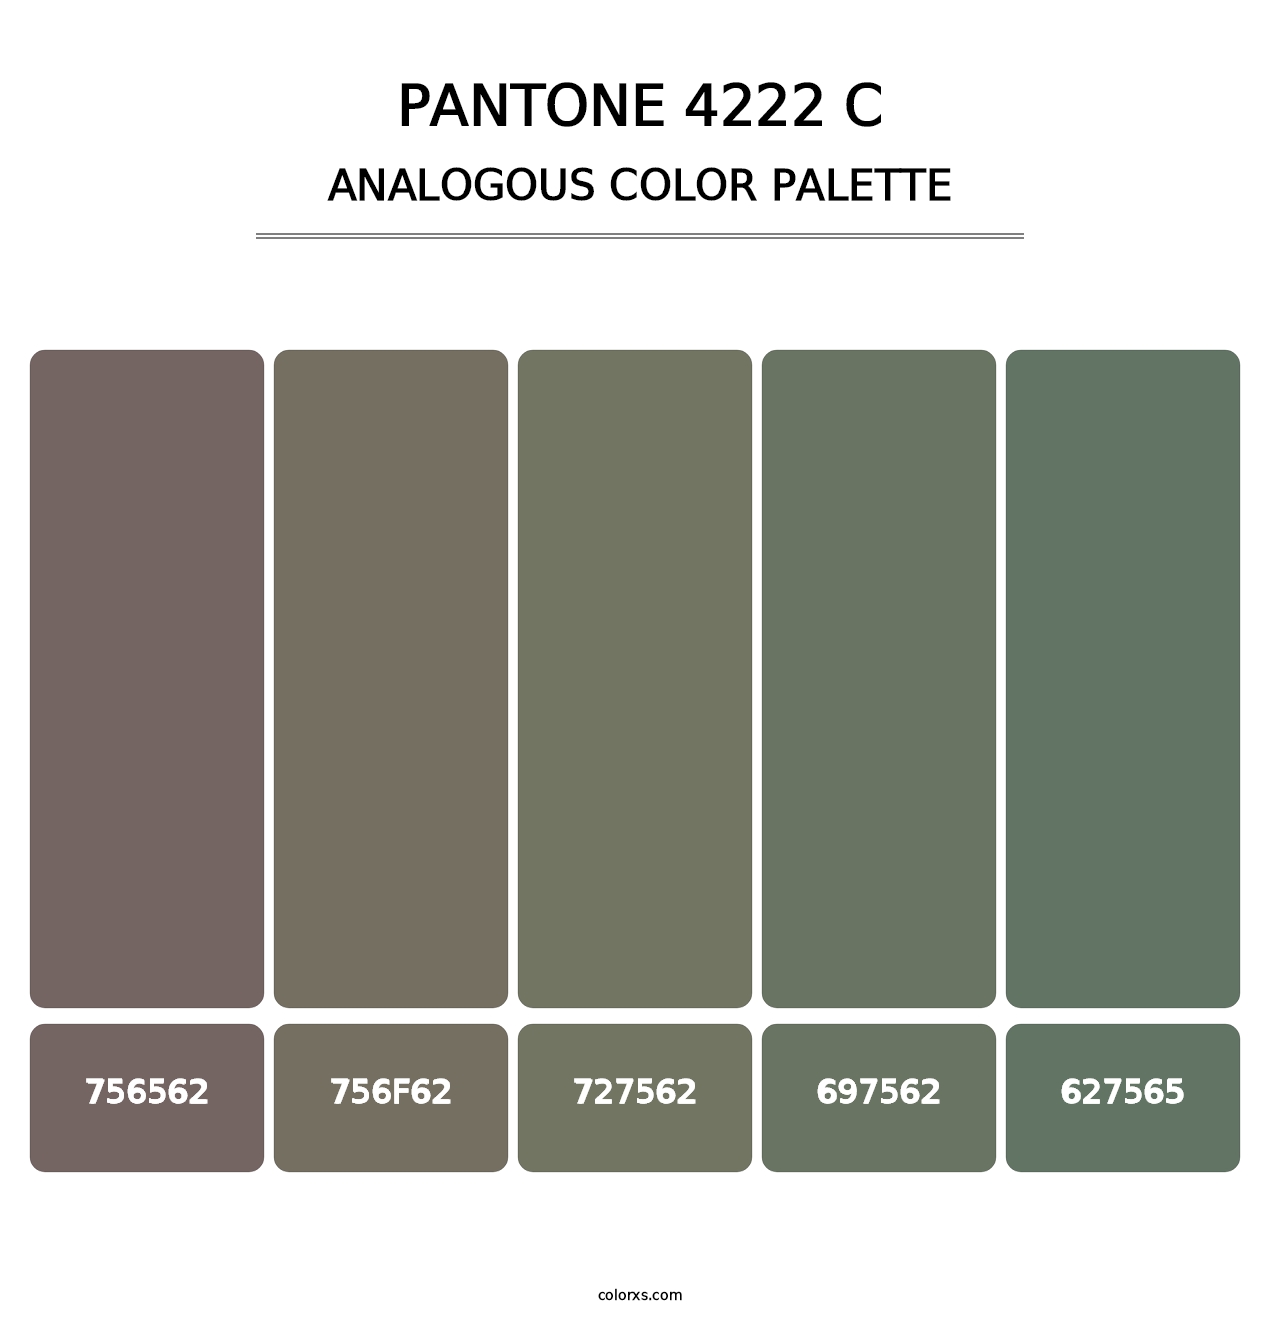 PANTONE 4222 C - Analogous Color Palette